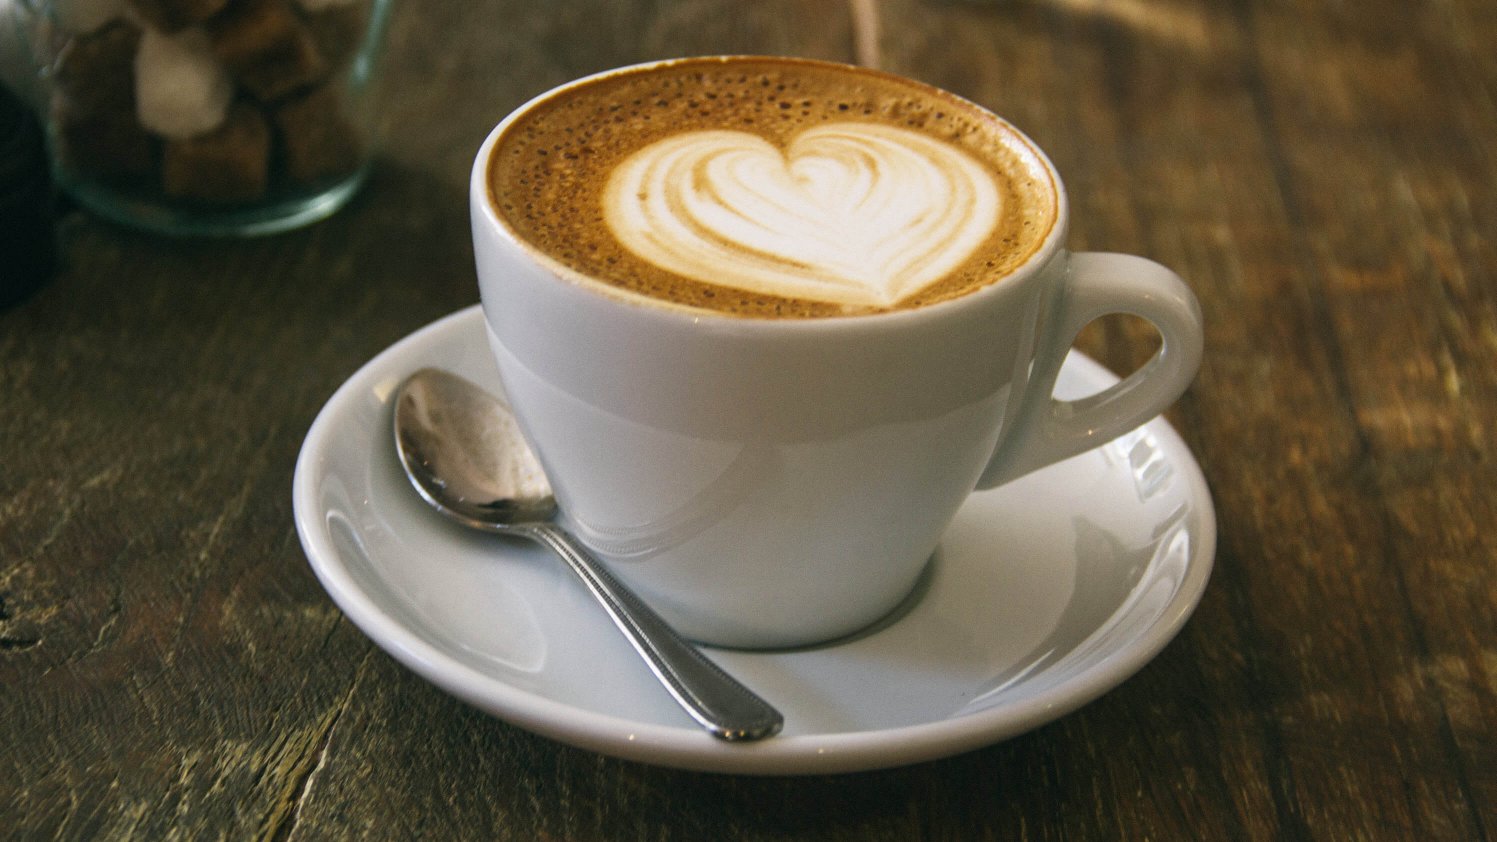 A heart shape in foamed milk on top of a barista coffee